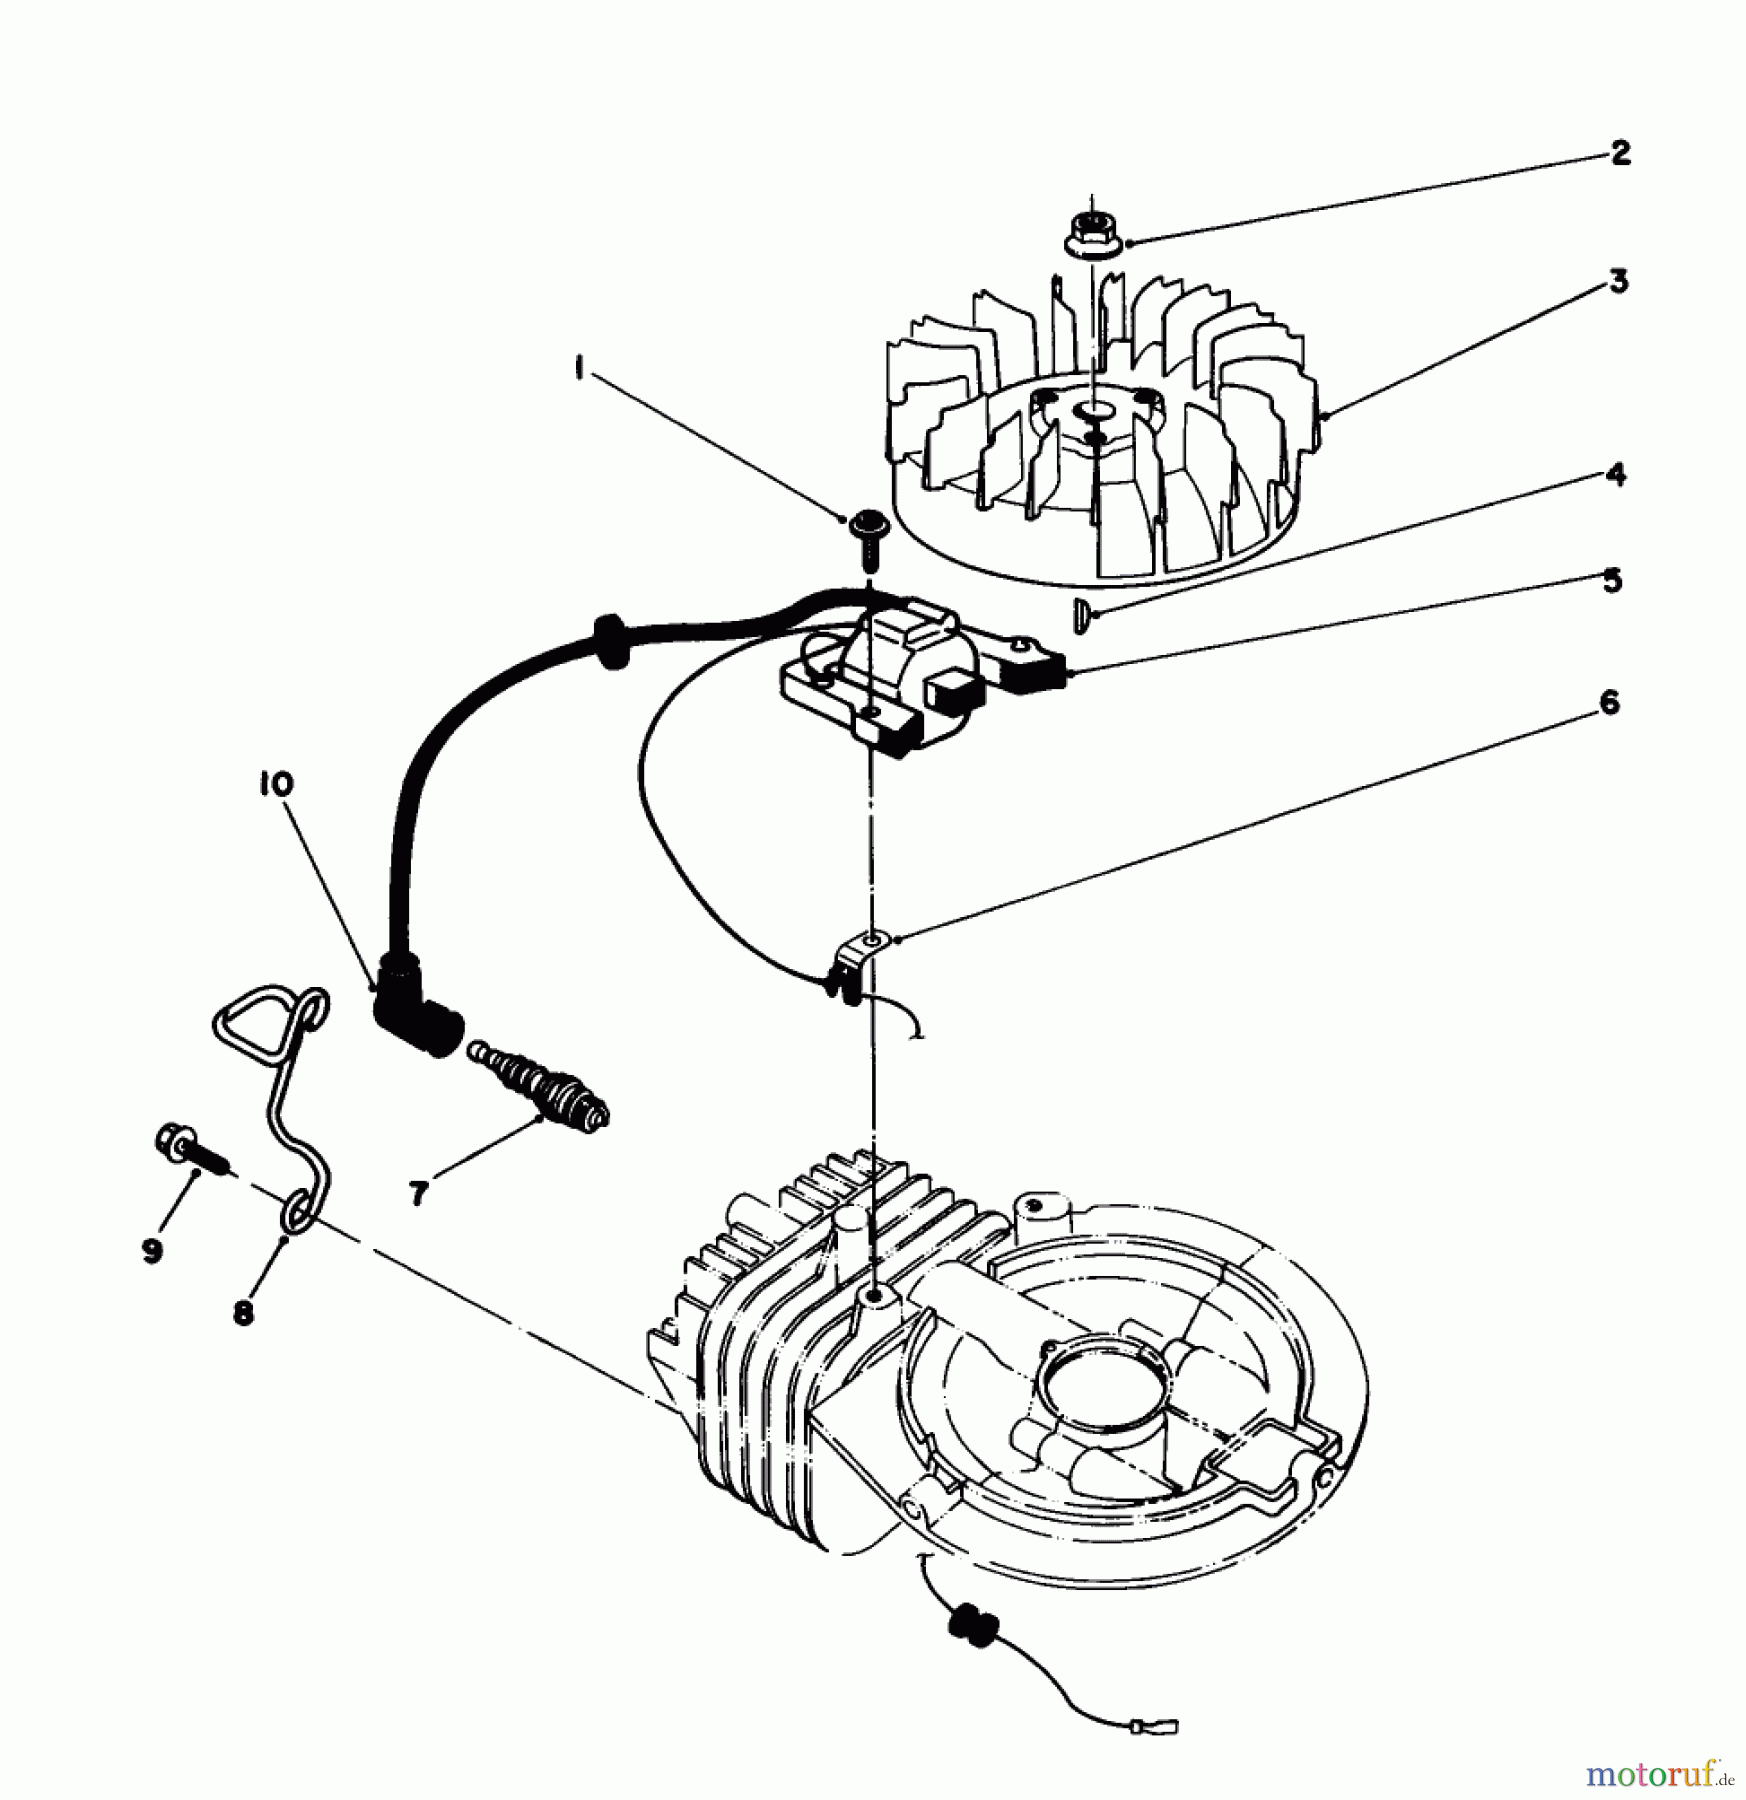  Toro Neu Mowers, Walk-Behind Seite 2 22025C - Toro Lawnmower, 1989 (9000001-9999999) ENGINE ASSEMBLY MODEL NO. 47PJ8 #2